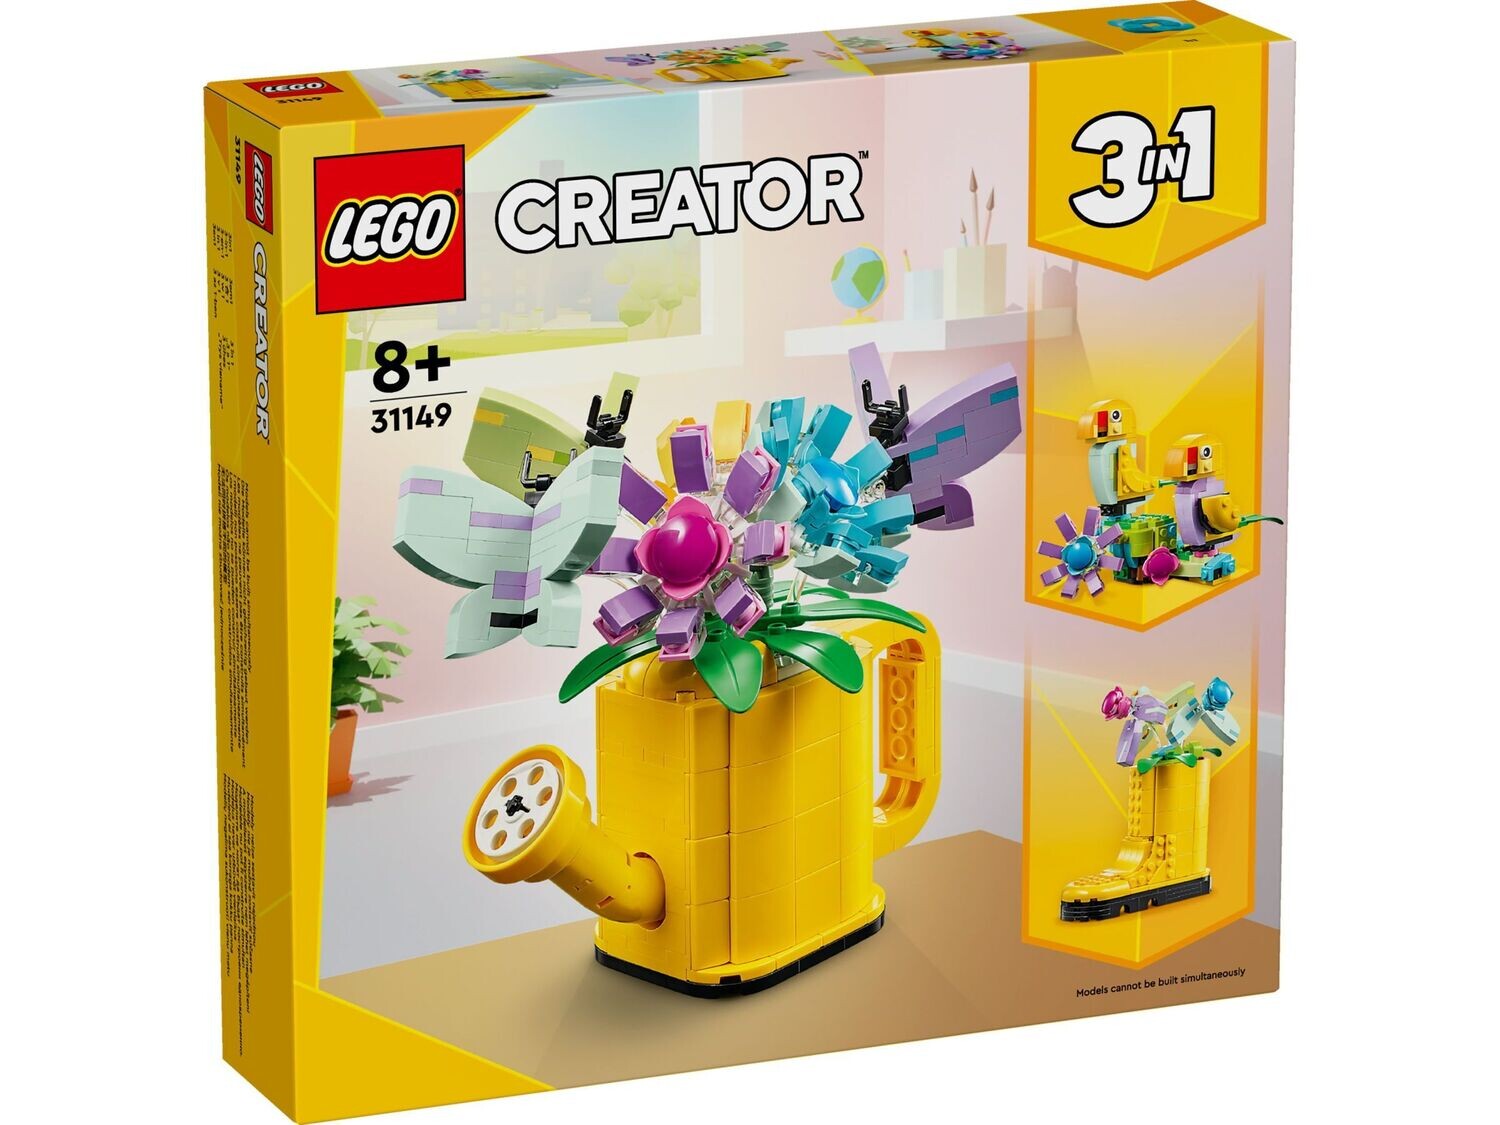 LEGO Creator 3-in-1 31149 - Bloemen in gieter